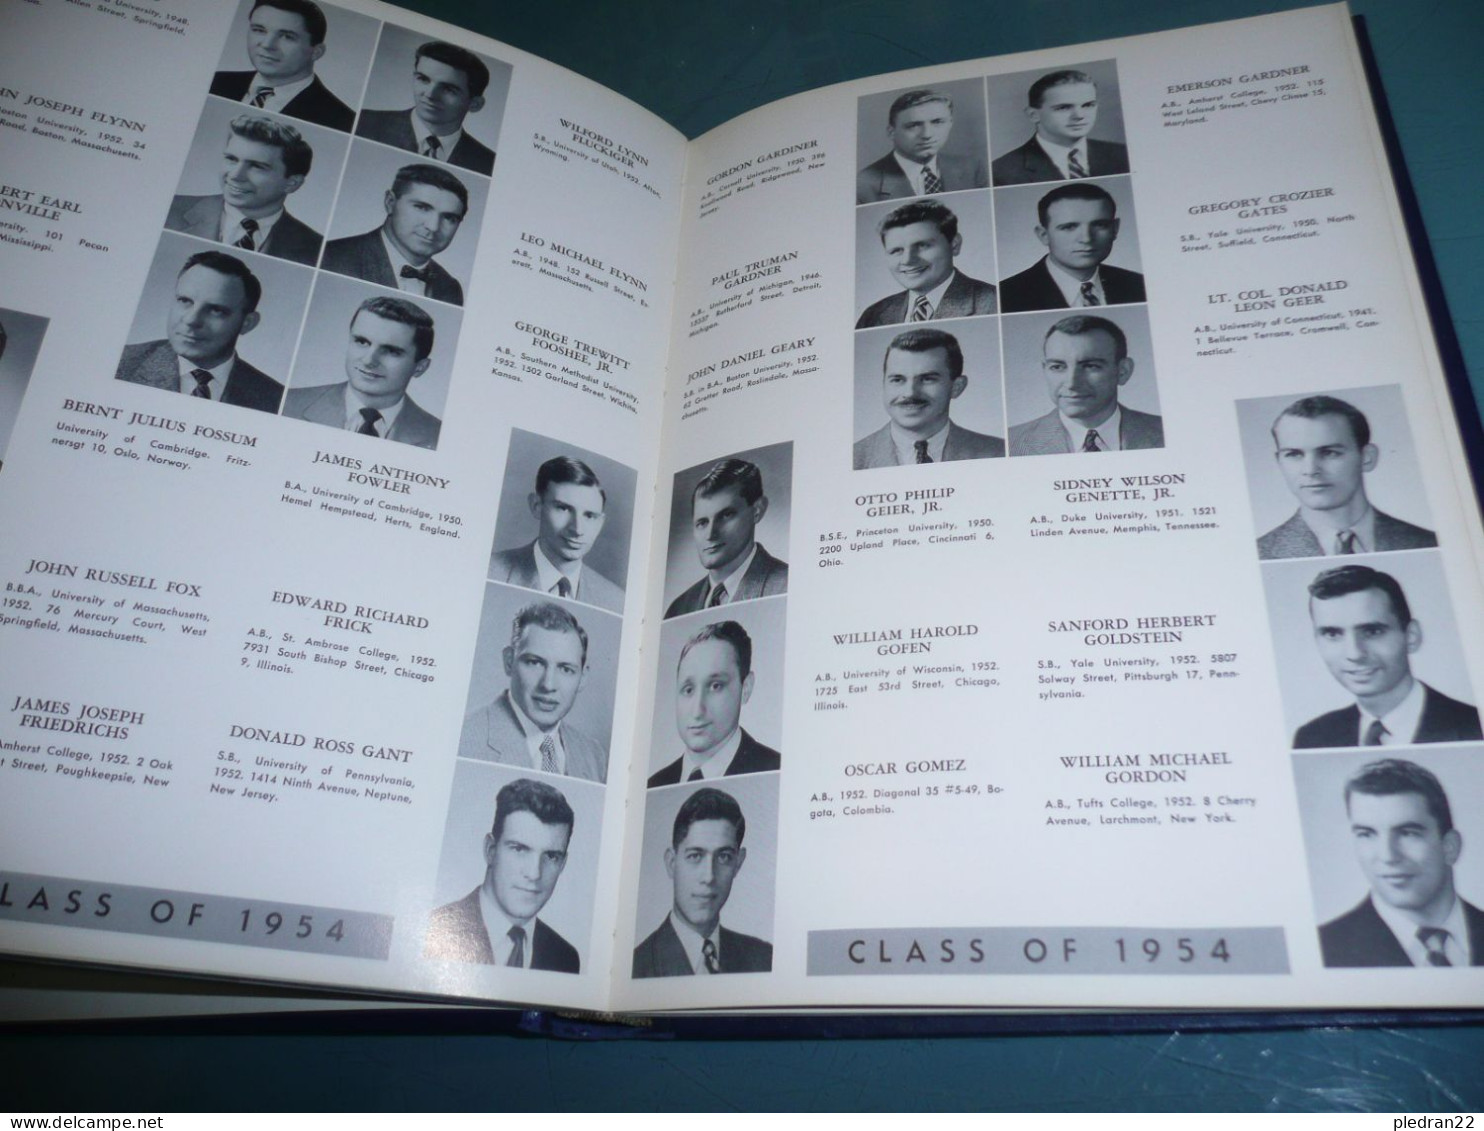 HARVARD BUSINESS SCHOOL THE ANNUAL REPORT 1954 PHOTOS DE TOUS LES ETUDIANTS + ILLUSTRATIONS ETATS UNIS USA - 1950-Heute